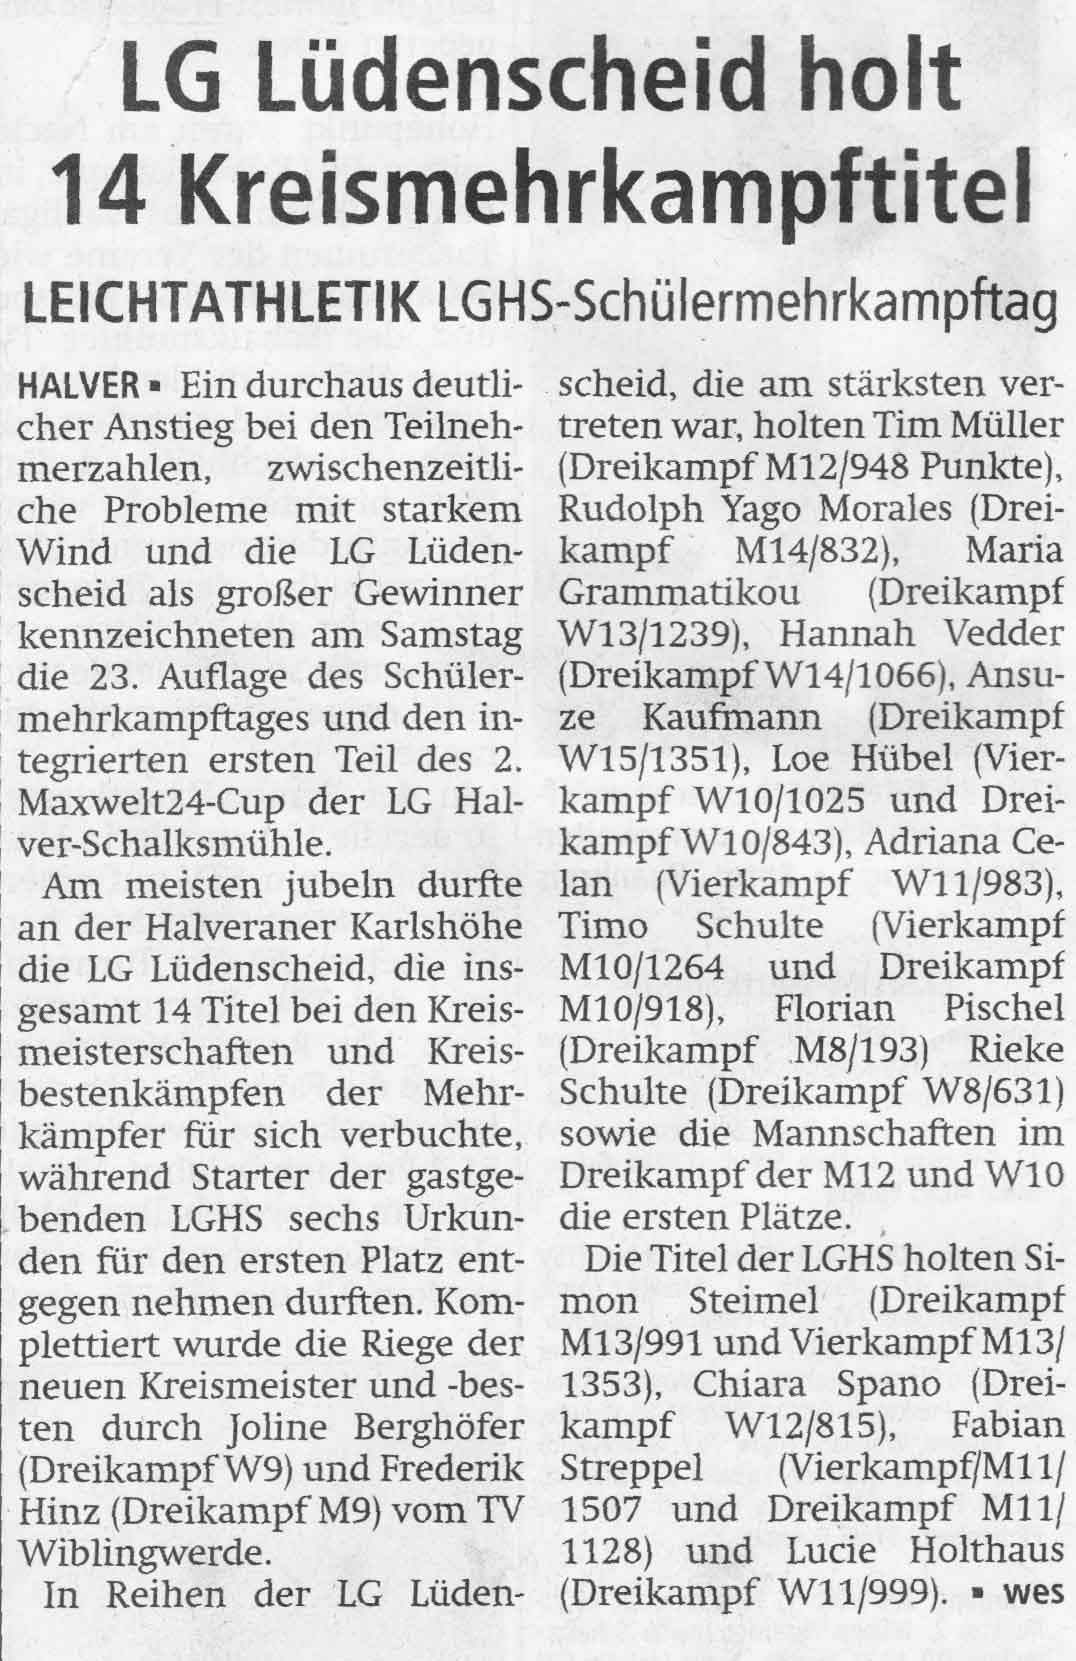 Bild: LG Lüdenscheid holt 14 Kreismehrkampftitel